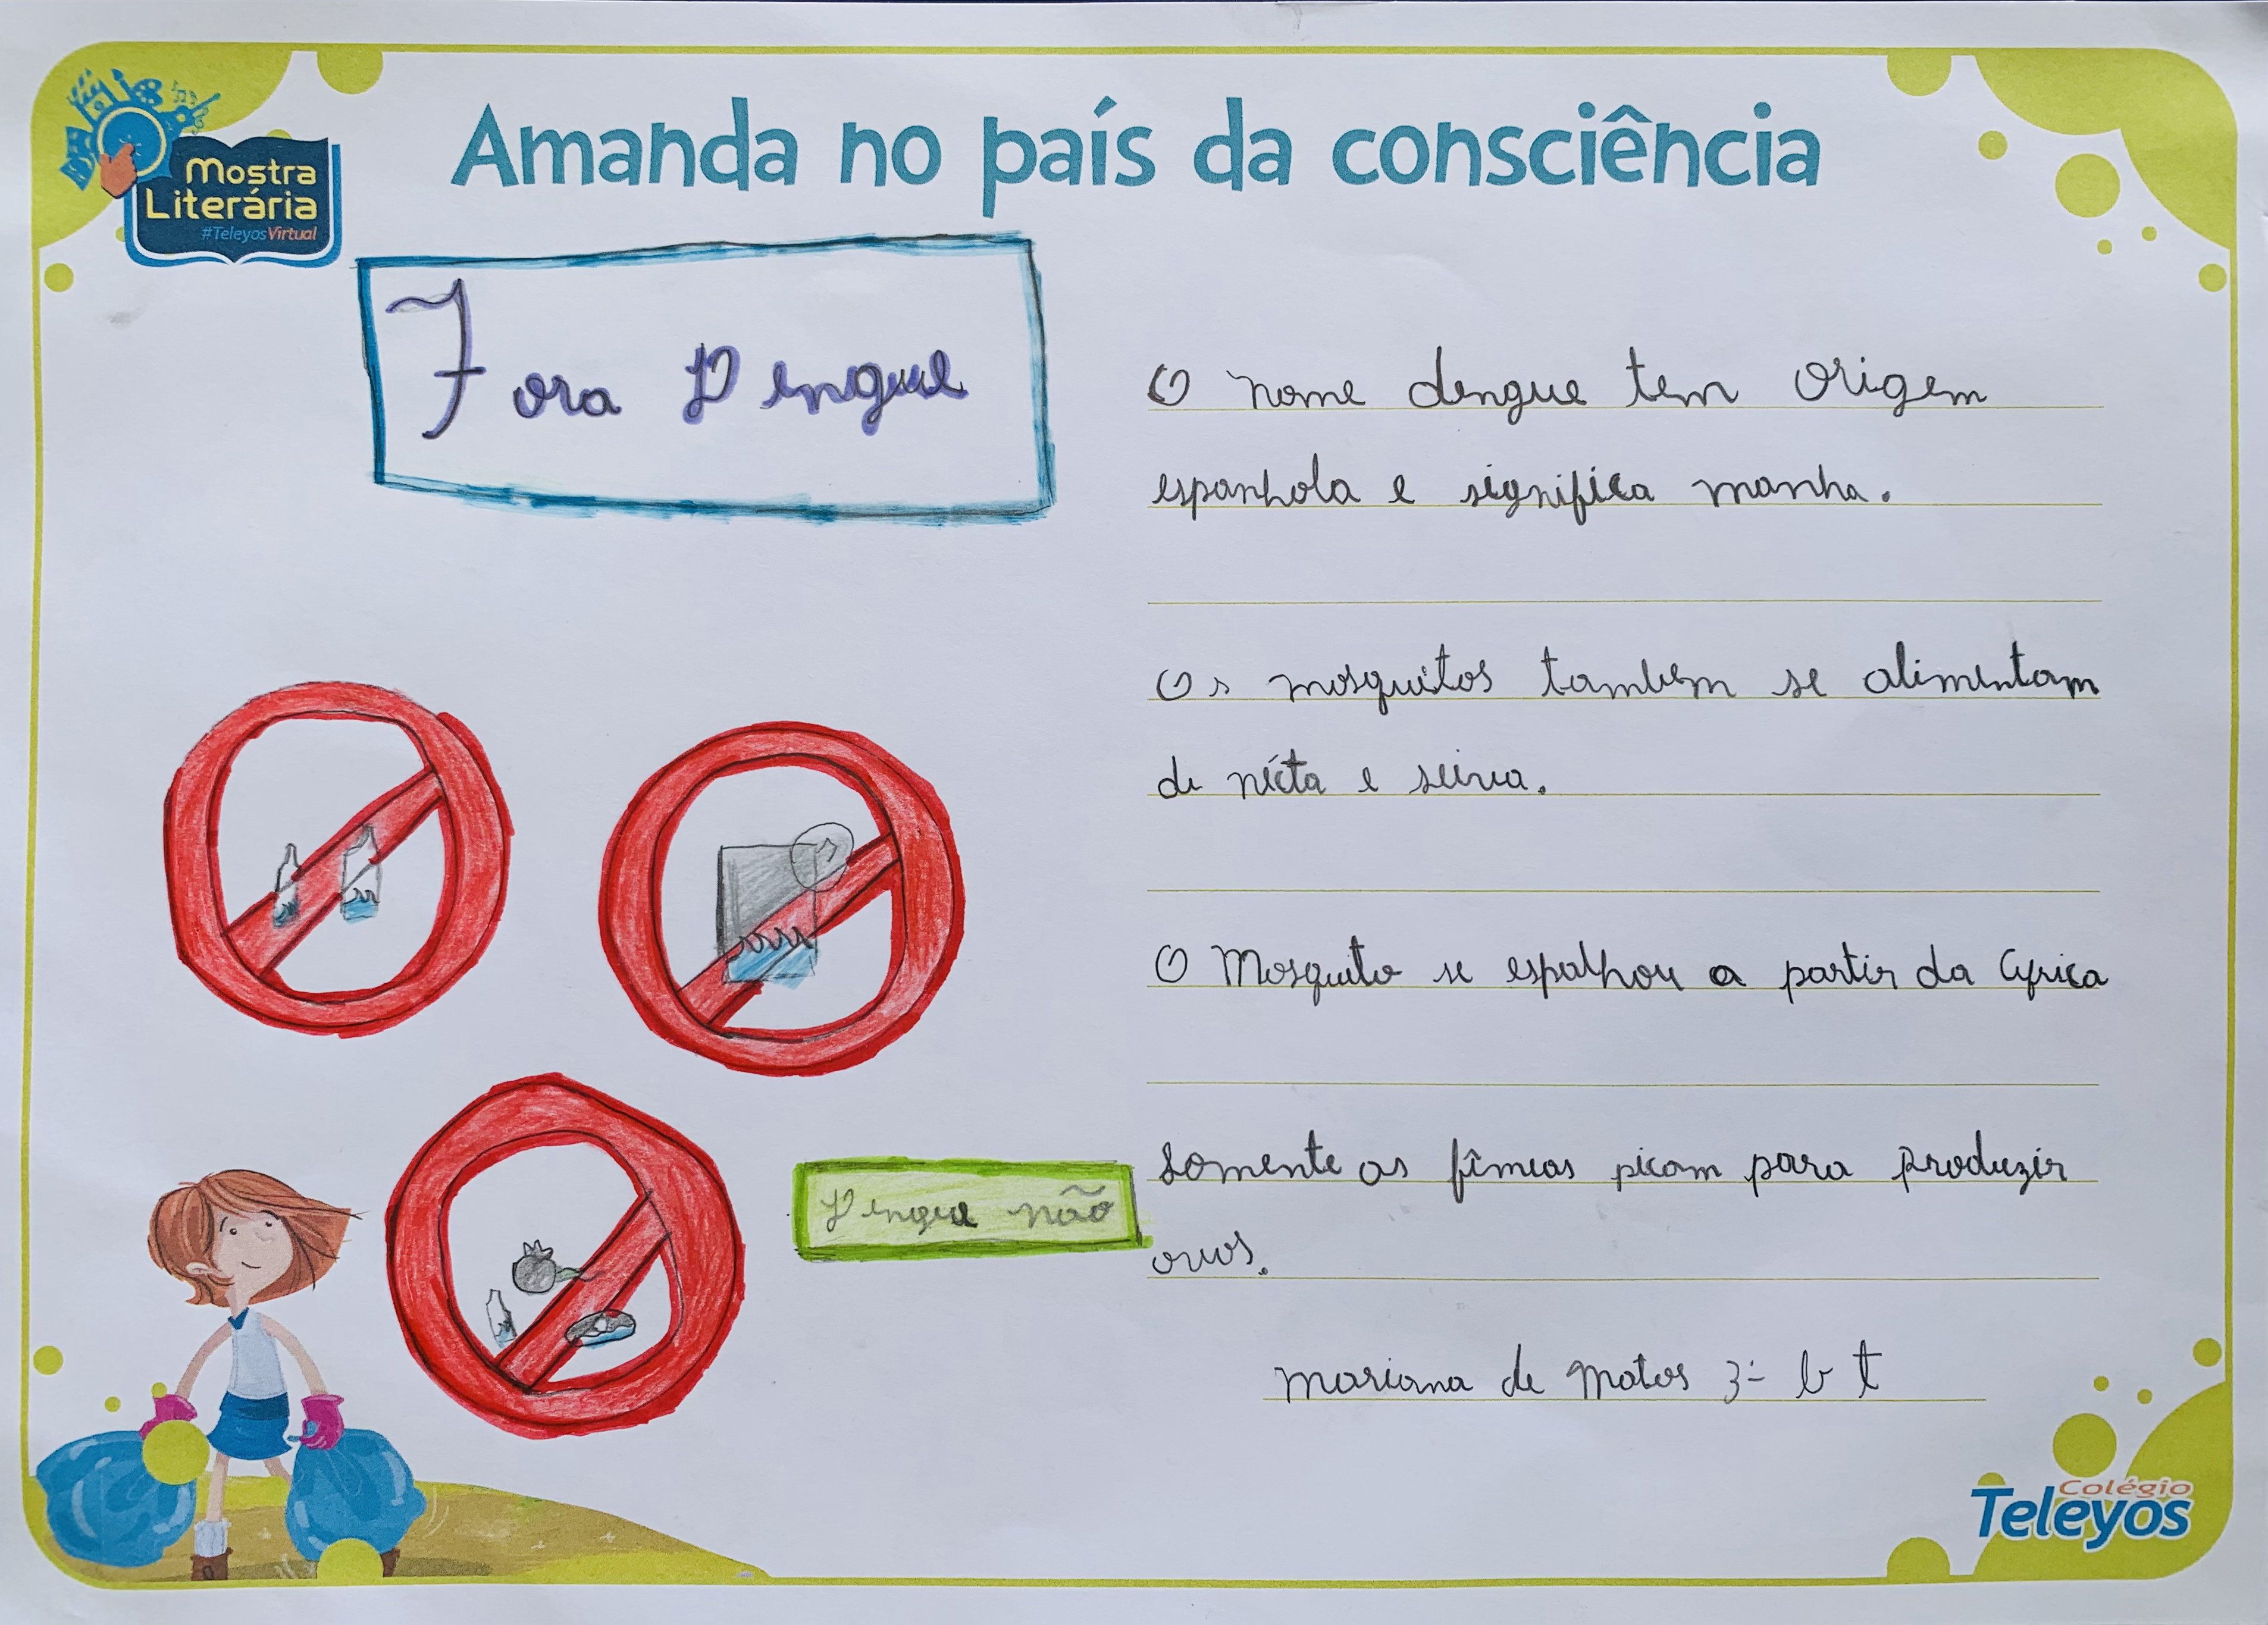 MARIANA DE MATOS - Diga não a dengue!
